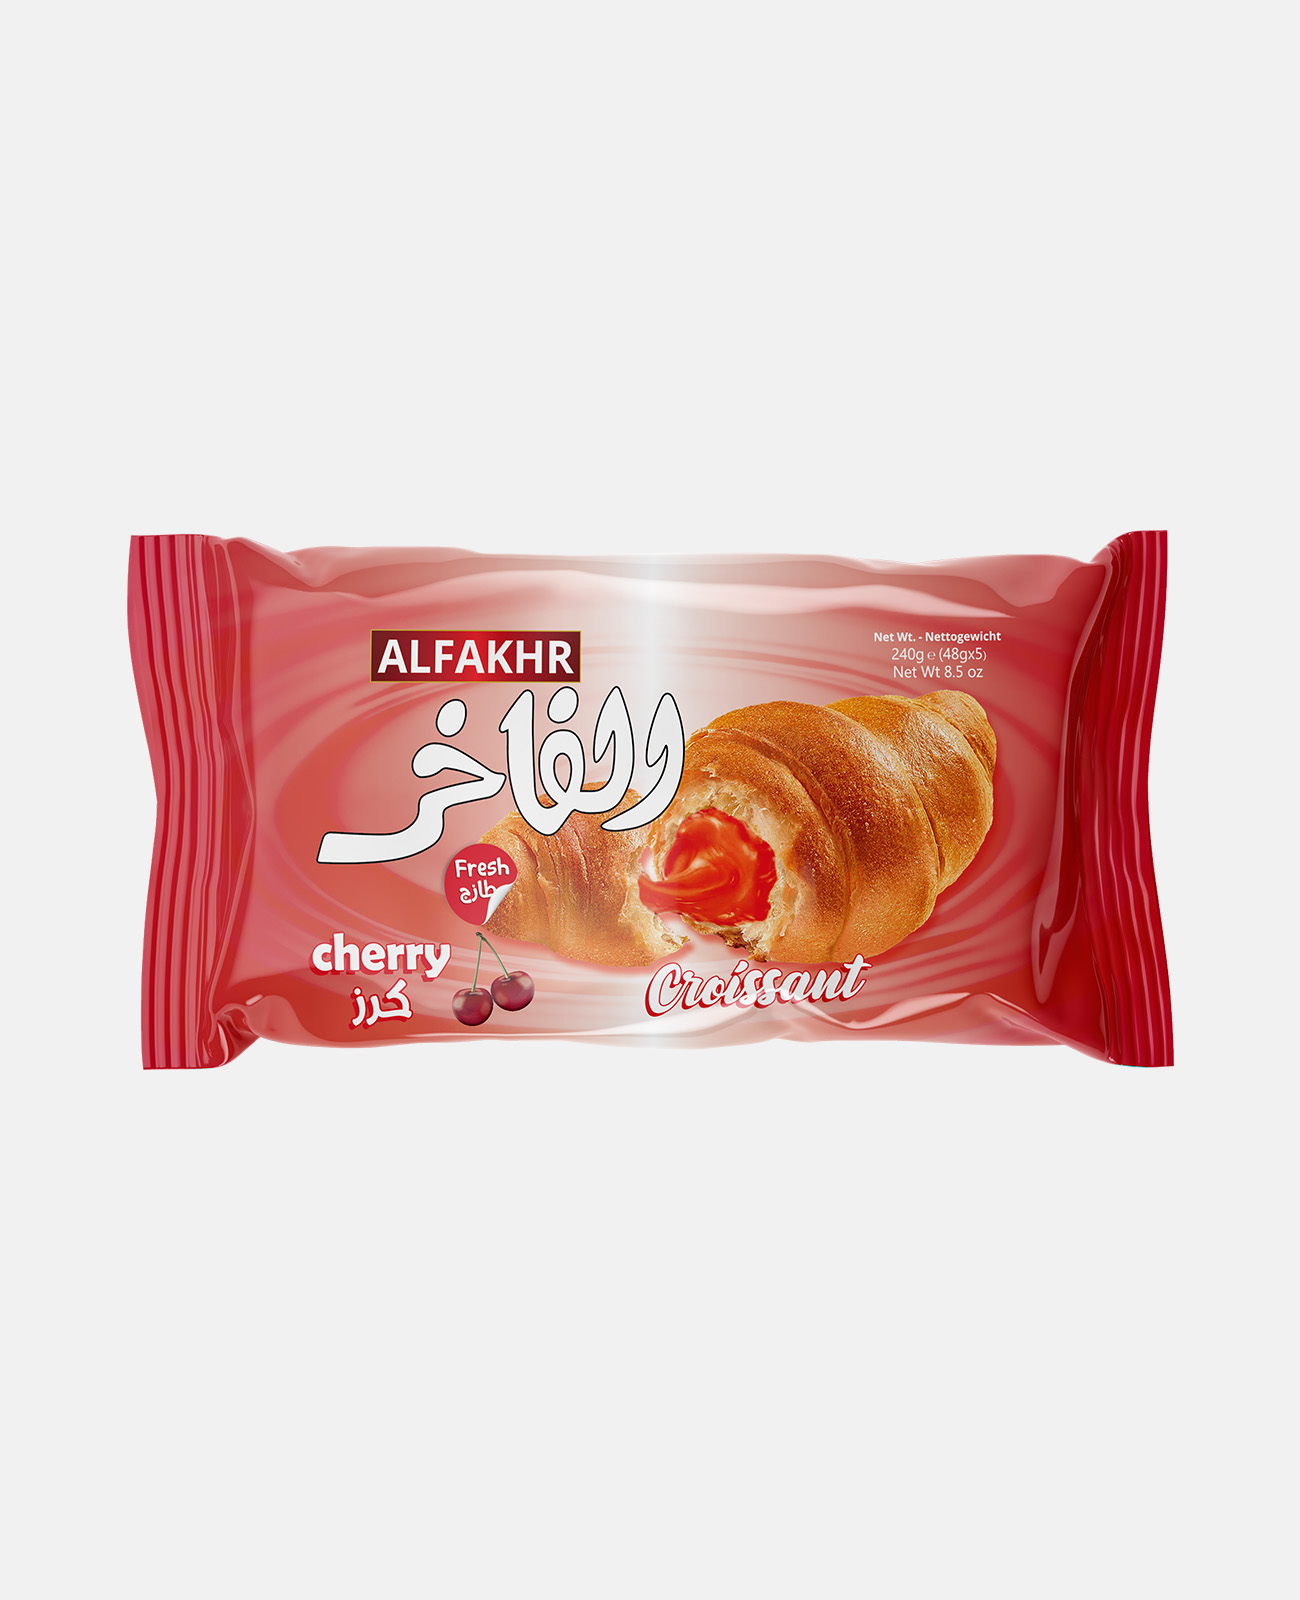 Alfakhr Croissant - Cherry Flavour